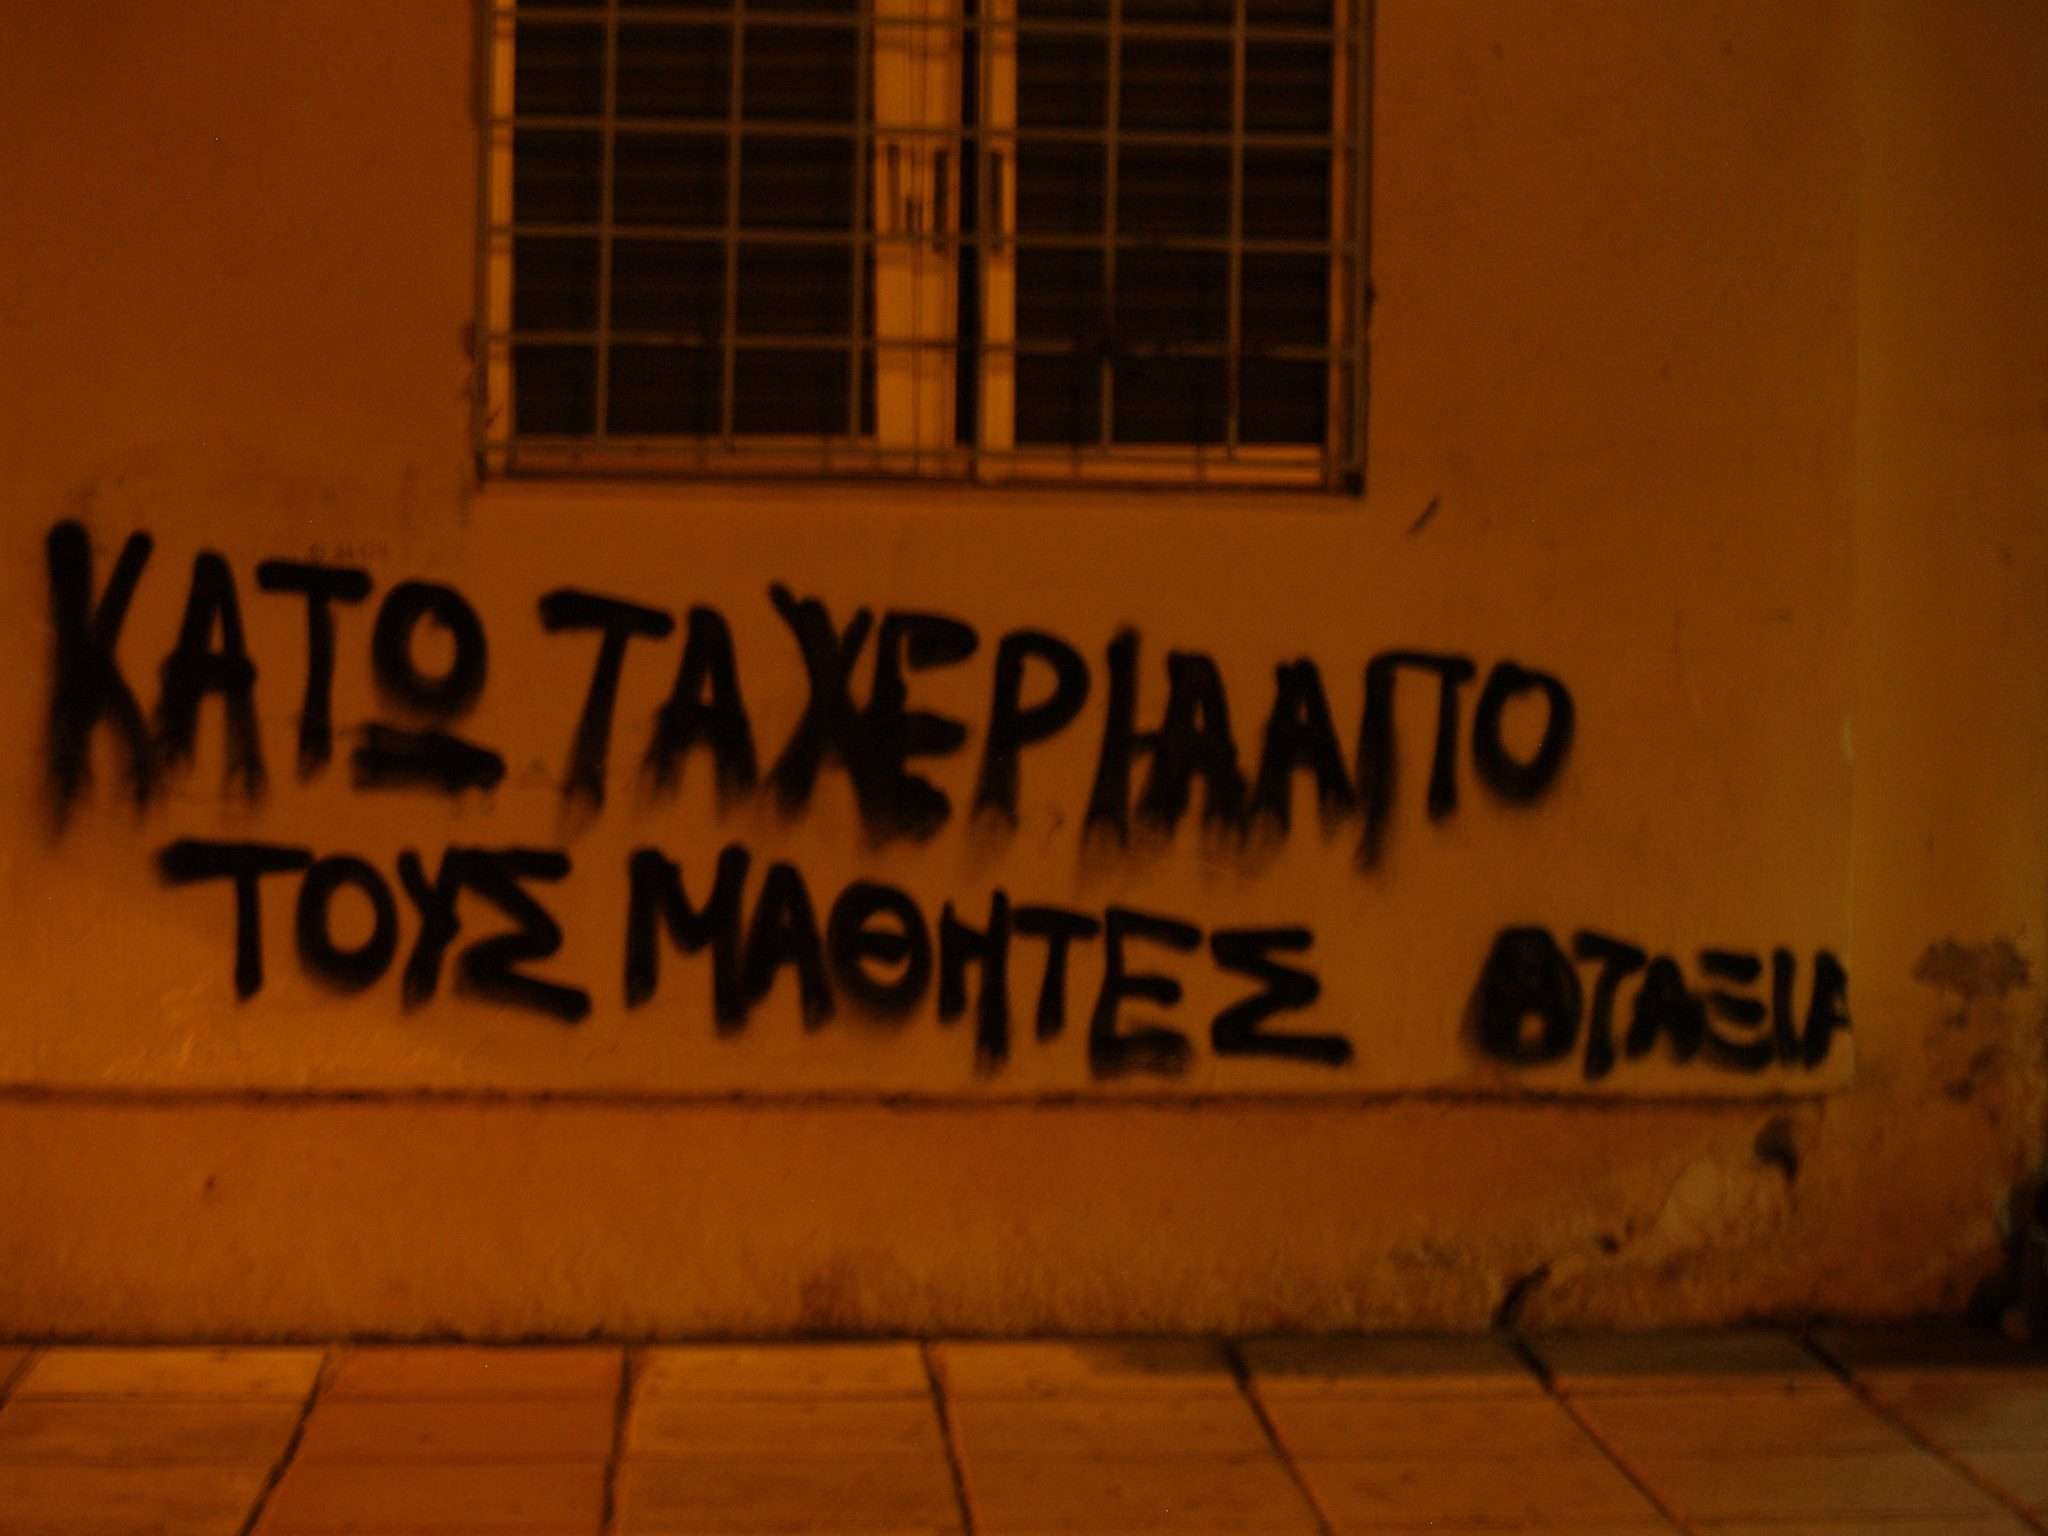 Θεσσαλονίκη: Ενημέρωση από την δίκη της 27/10, ποινικοποίηση των μαθητικών αγώνων – καταλήψεων